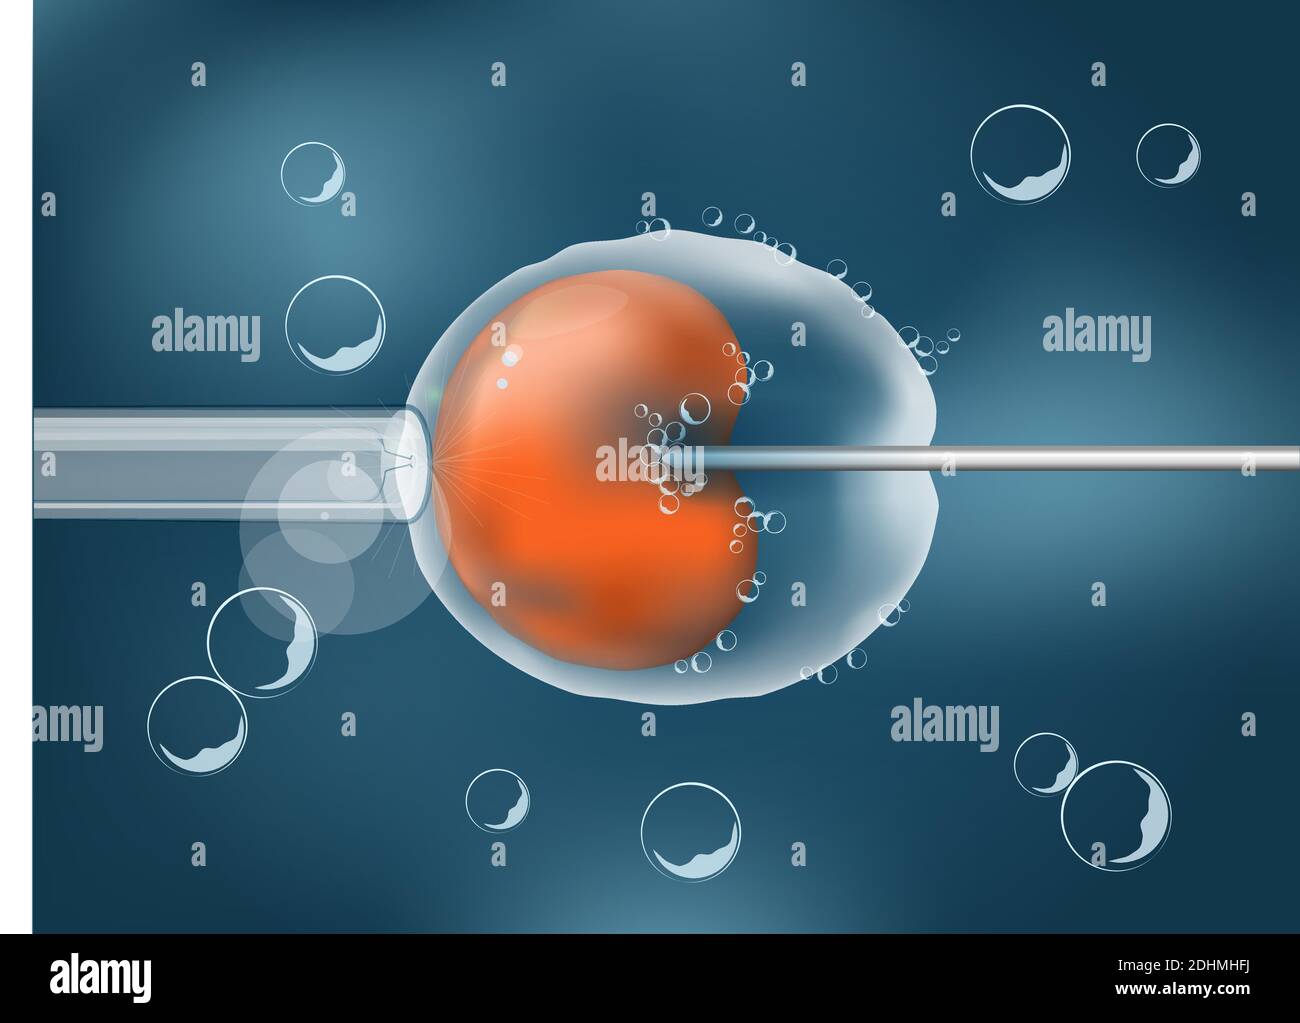 In-vitro-Fertilisation. IVF. Zelle unter dem Mikroskop. Menschliches Ei auf grauem Hintergrund. vektor. Illustration leicht editierbar für Ihre Hintergrundfarbe. Stock Vektor